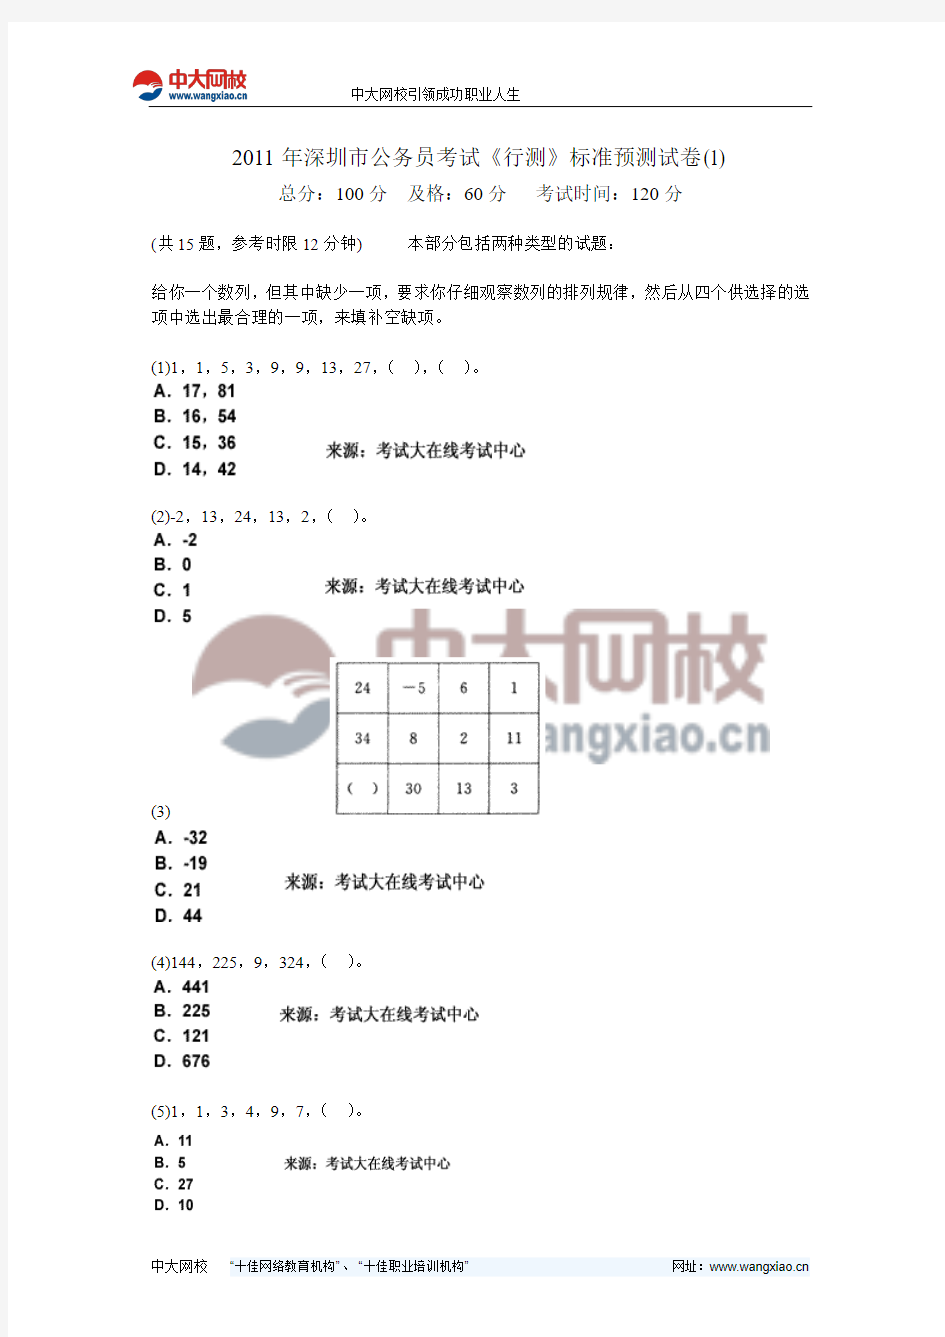 2011年深圳市公务员考试《行测》标准预测试卷(1)-中大网校